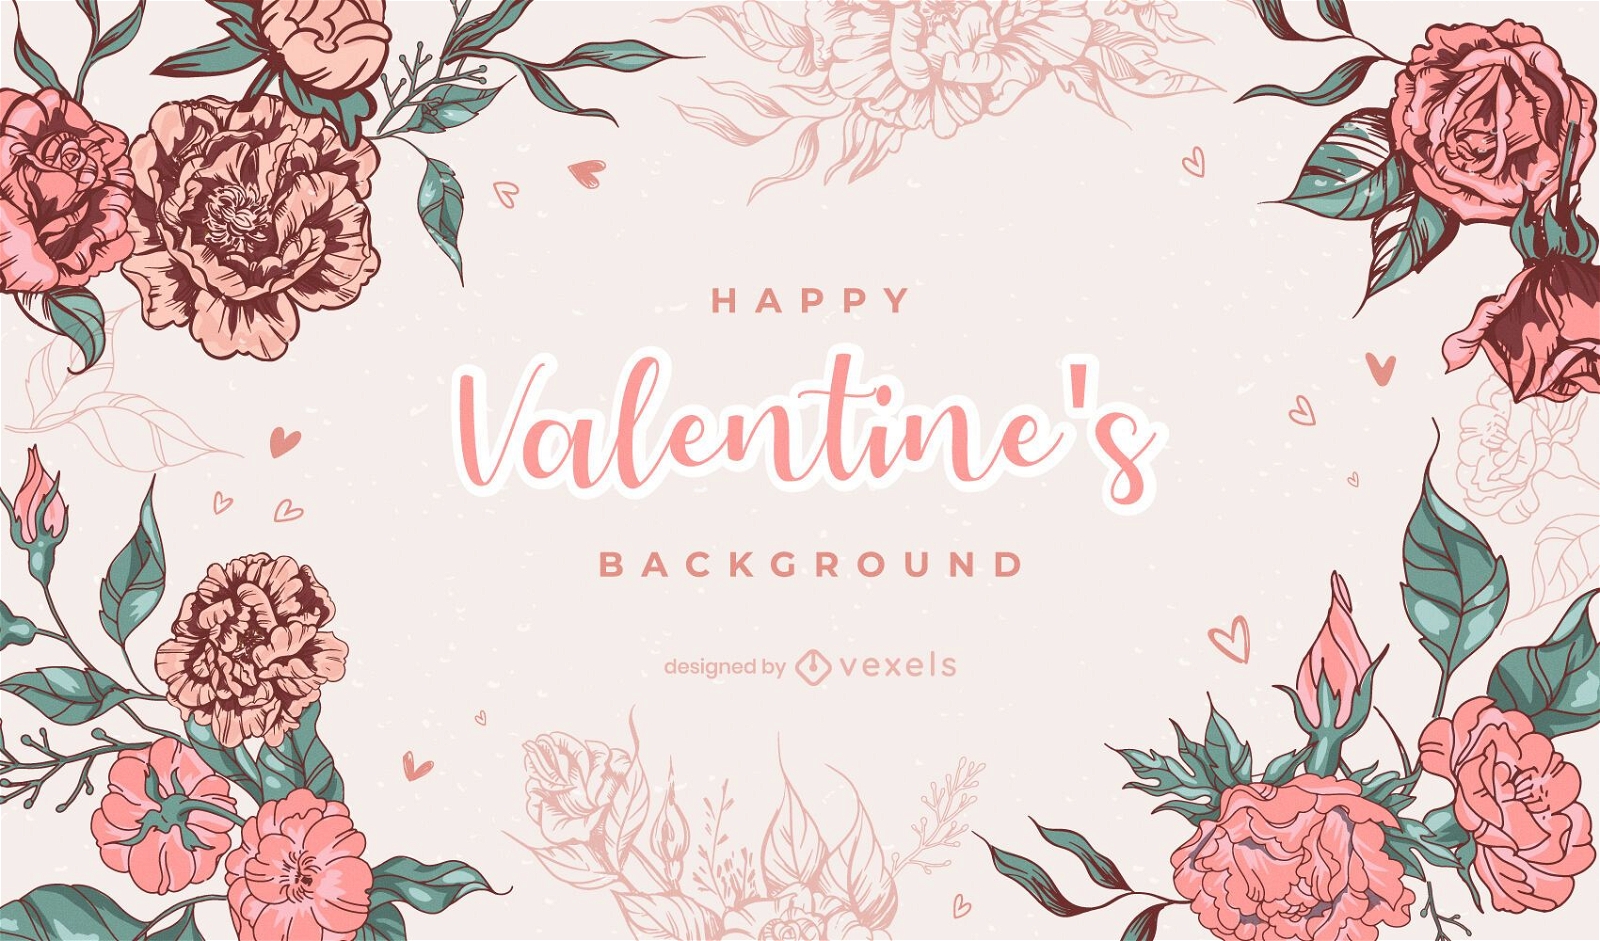 Valentine's day flowers background design